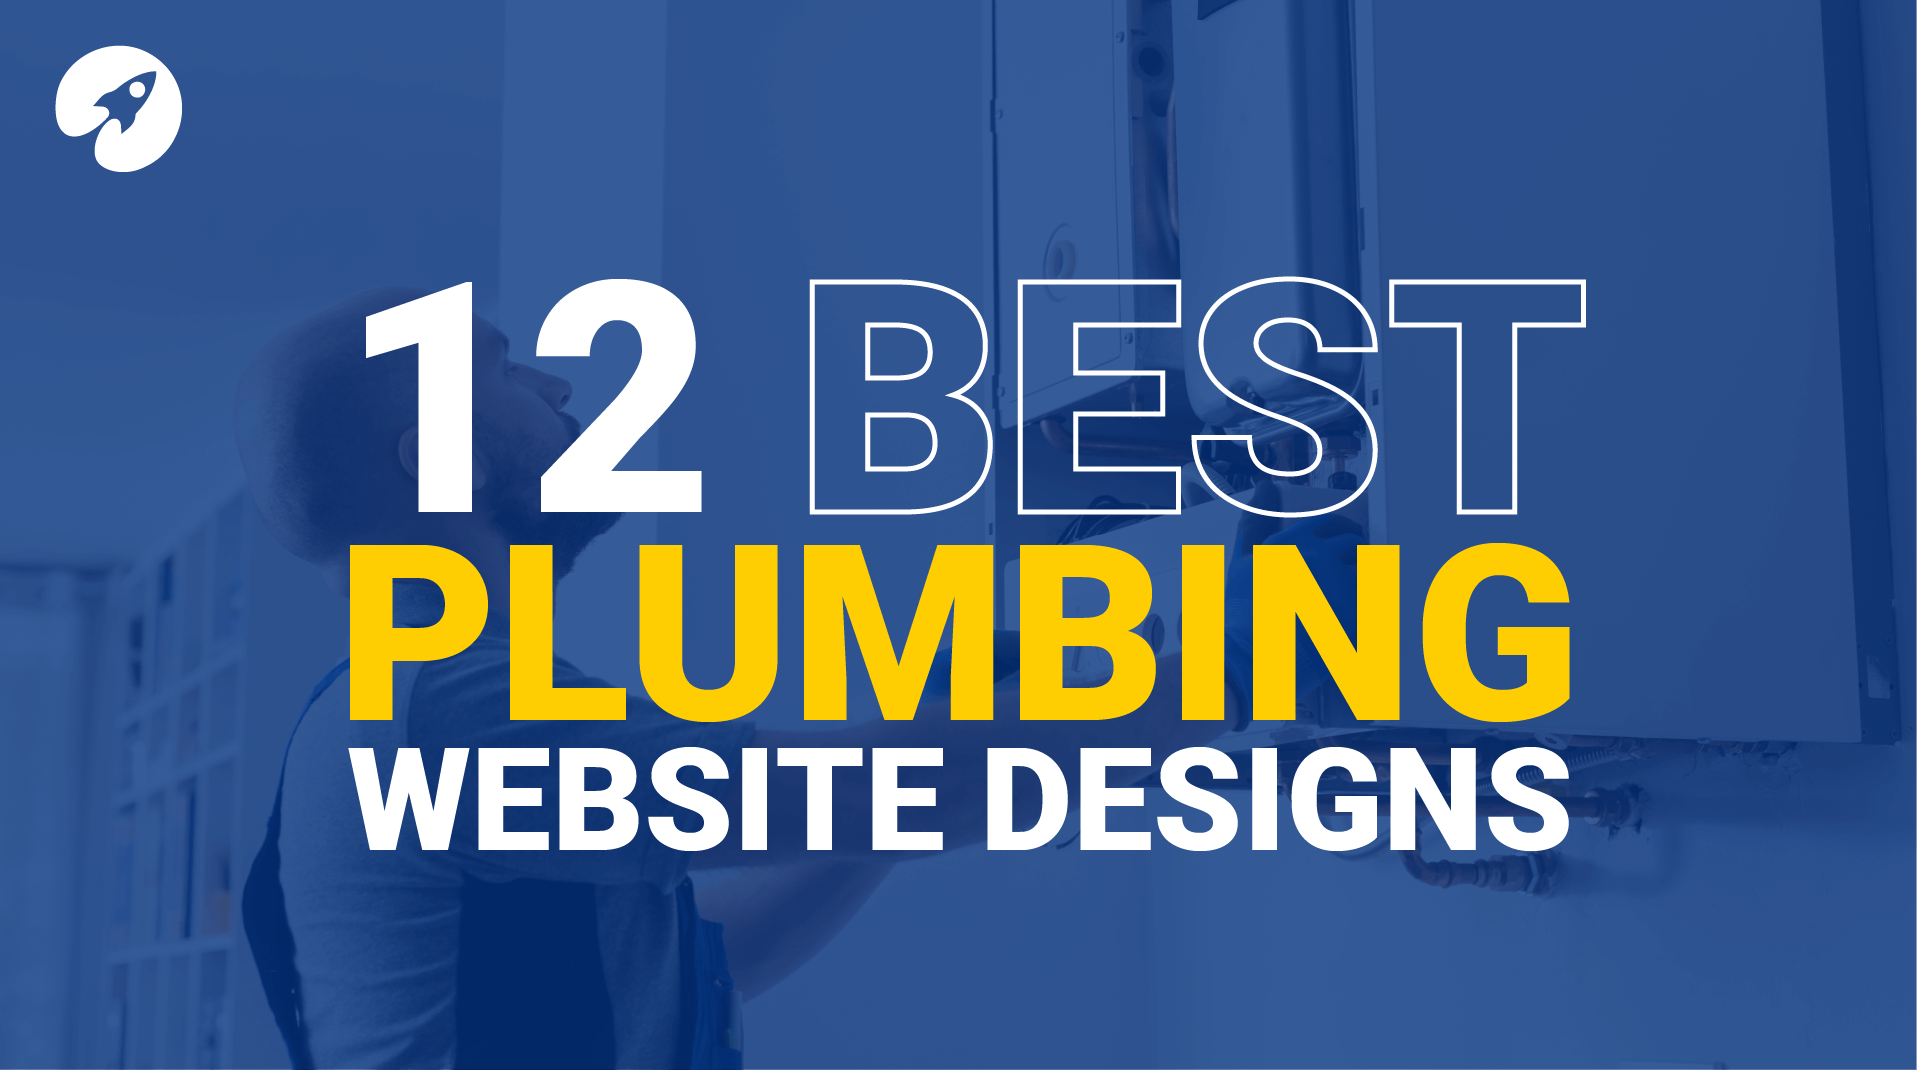 The 12 best plumbing web design examples